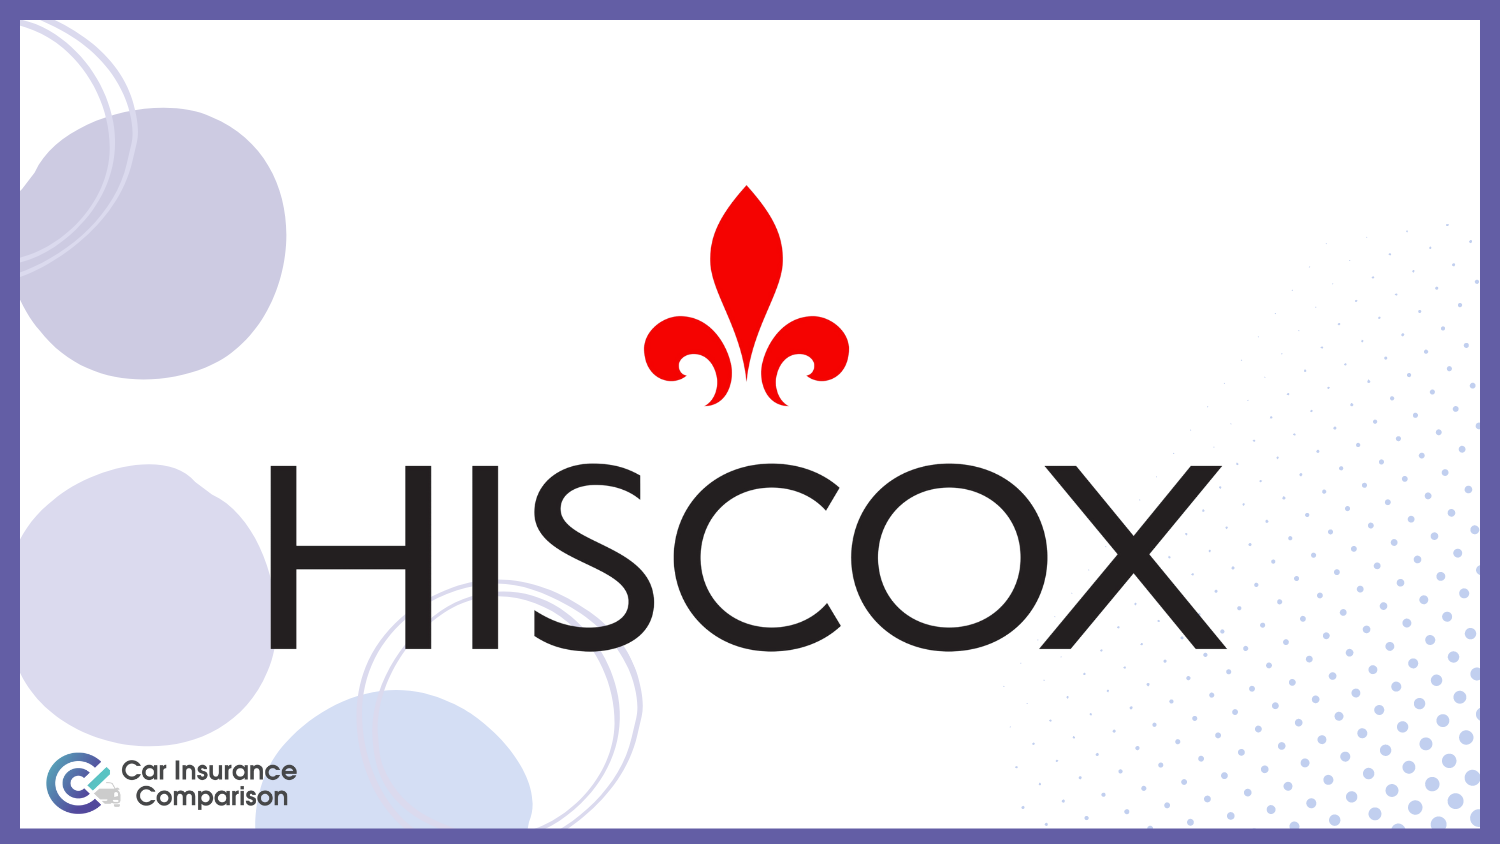 Car-Insurance-Comparison-Hiscox-Provider-Header-Banner